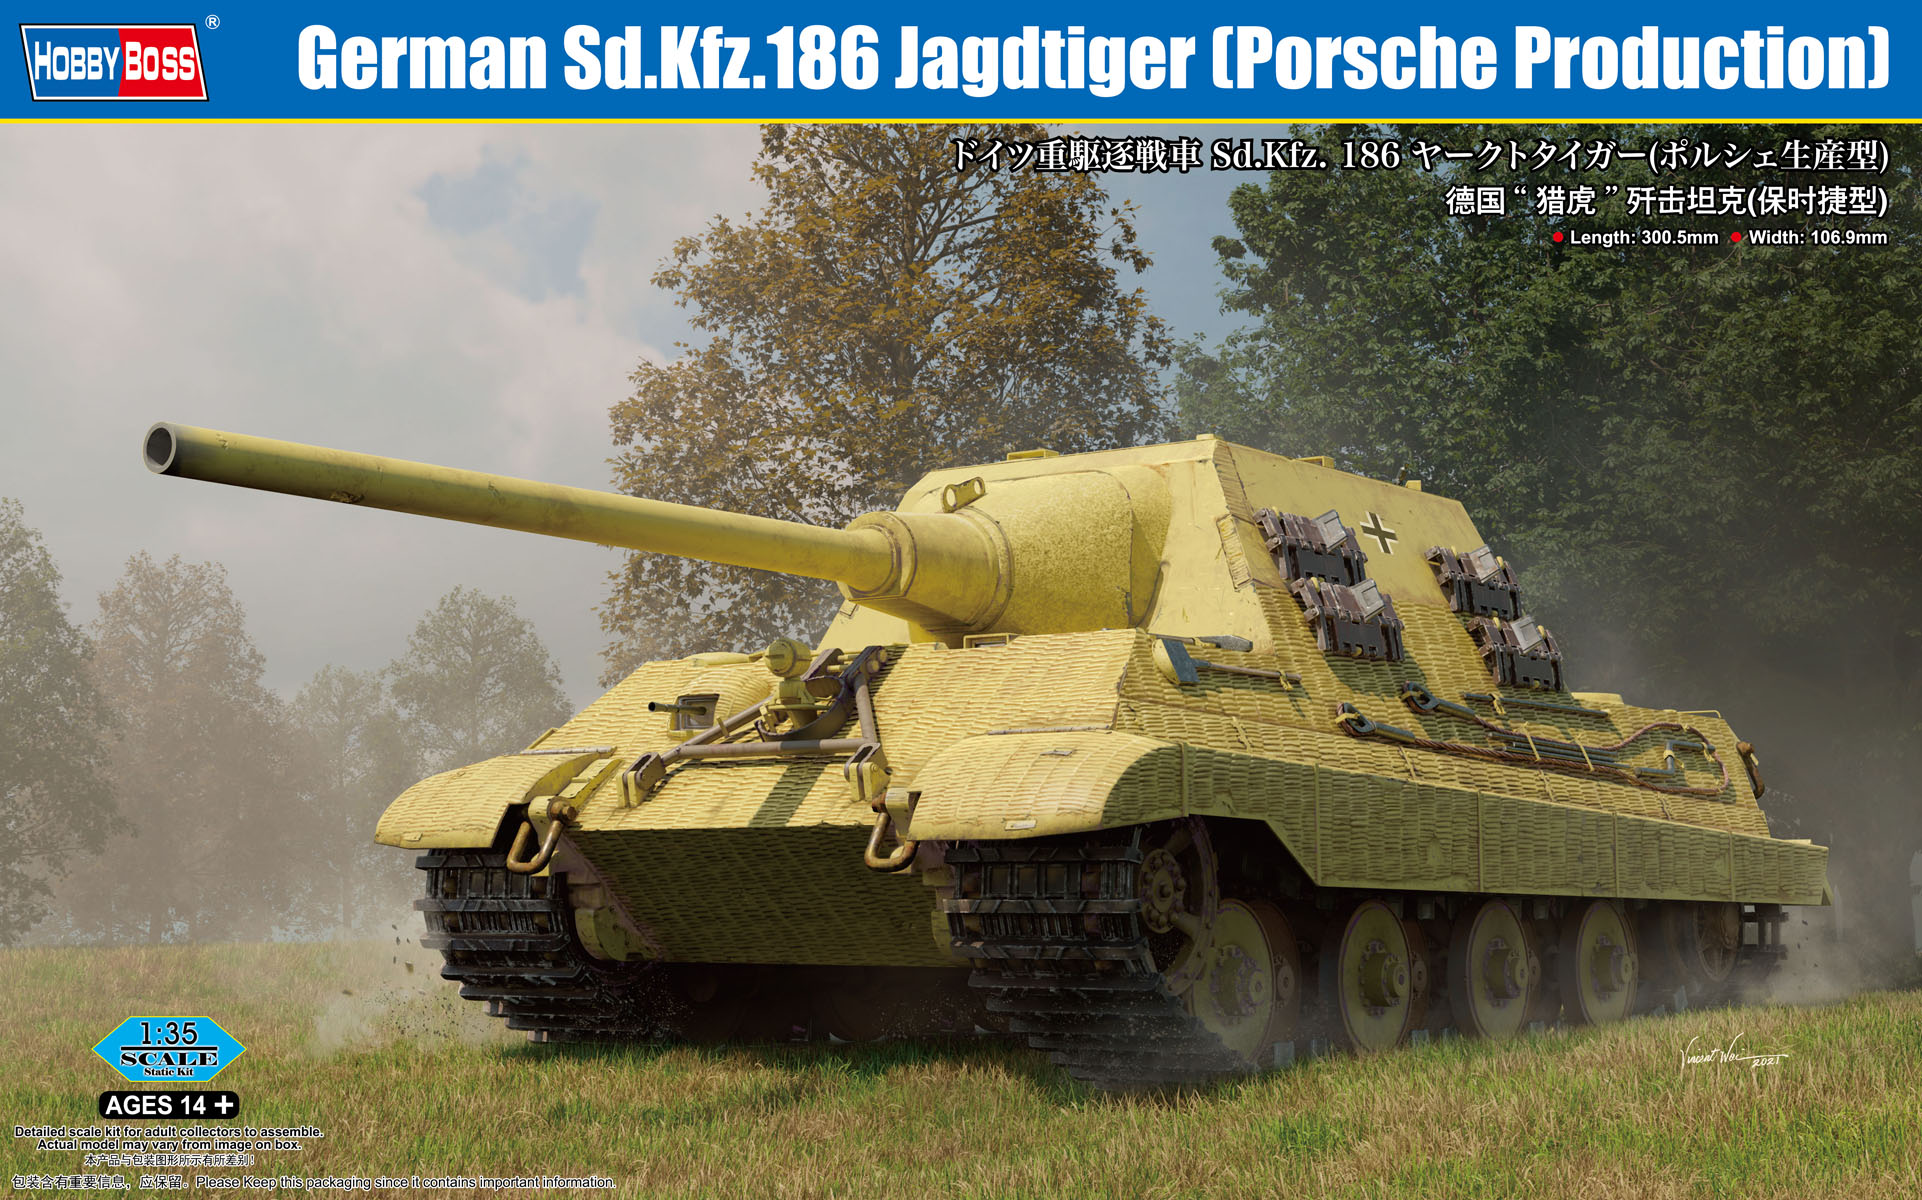 予約する　　1/35 ドイツ重駆逐戦車 Sd.Kfz.186 ヤークトタイガー(ポルシェ生産型)